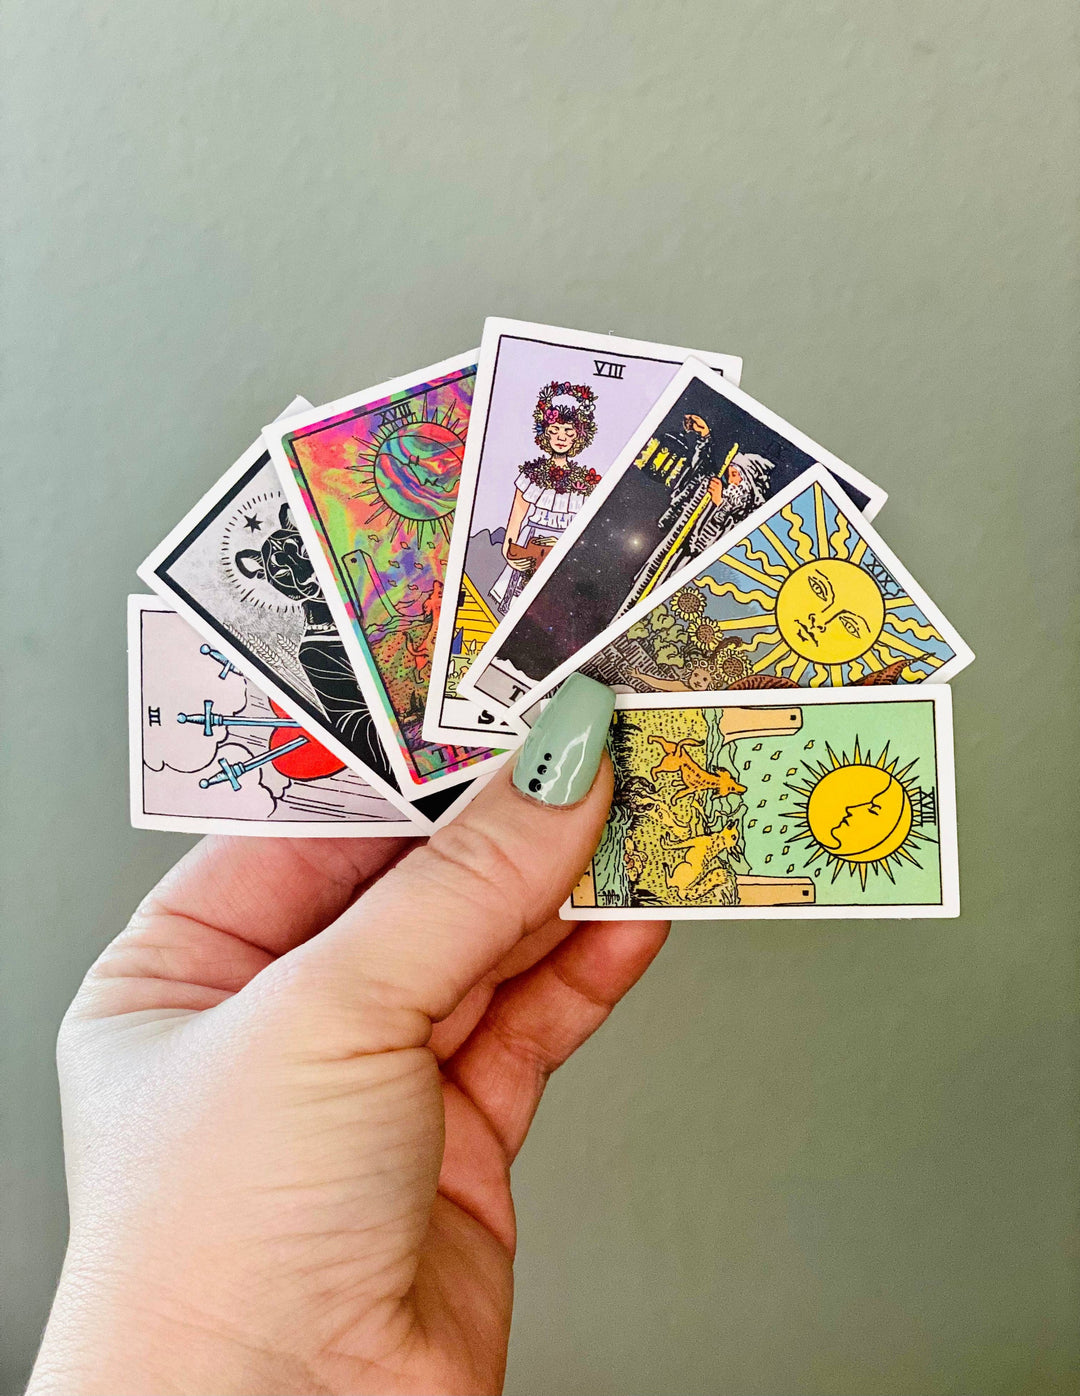 Medium moon - Tarot card sticker packs